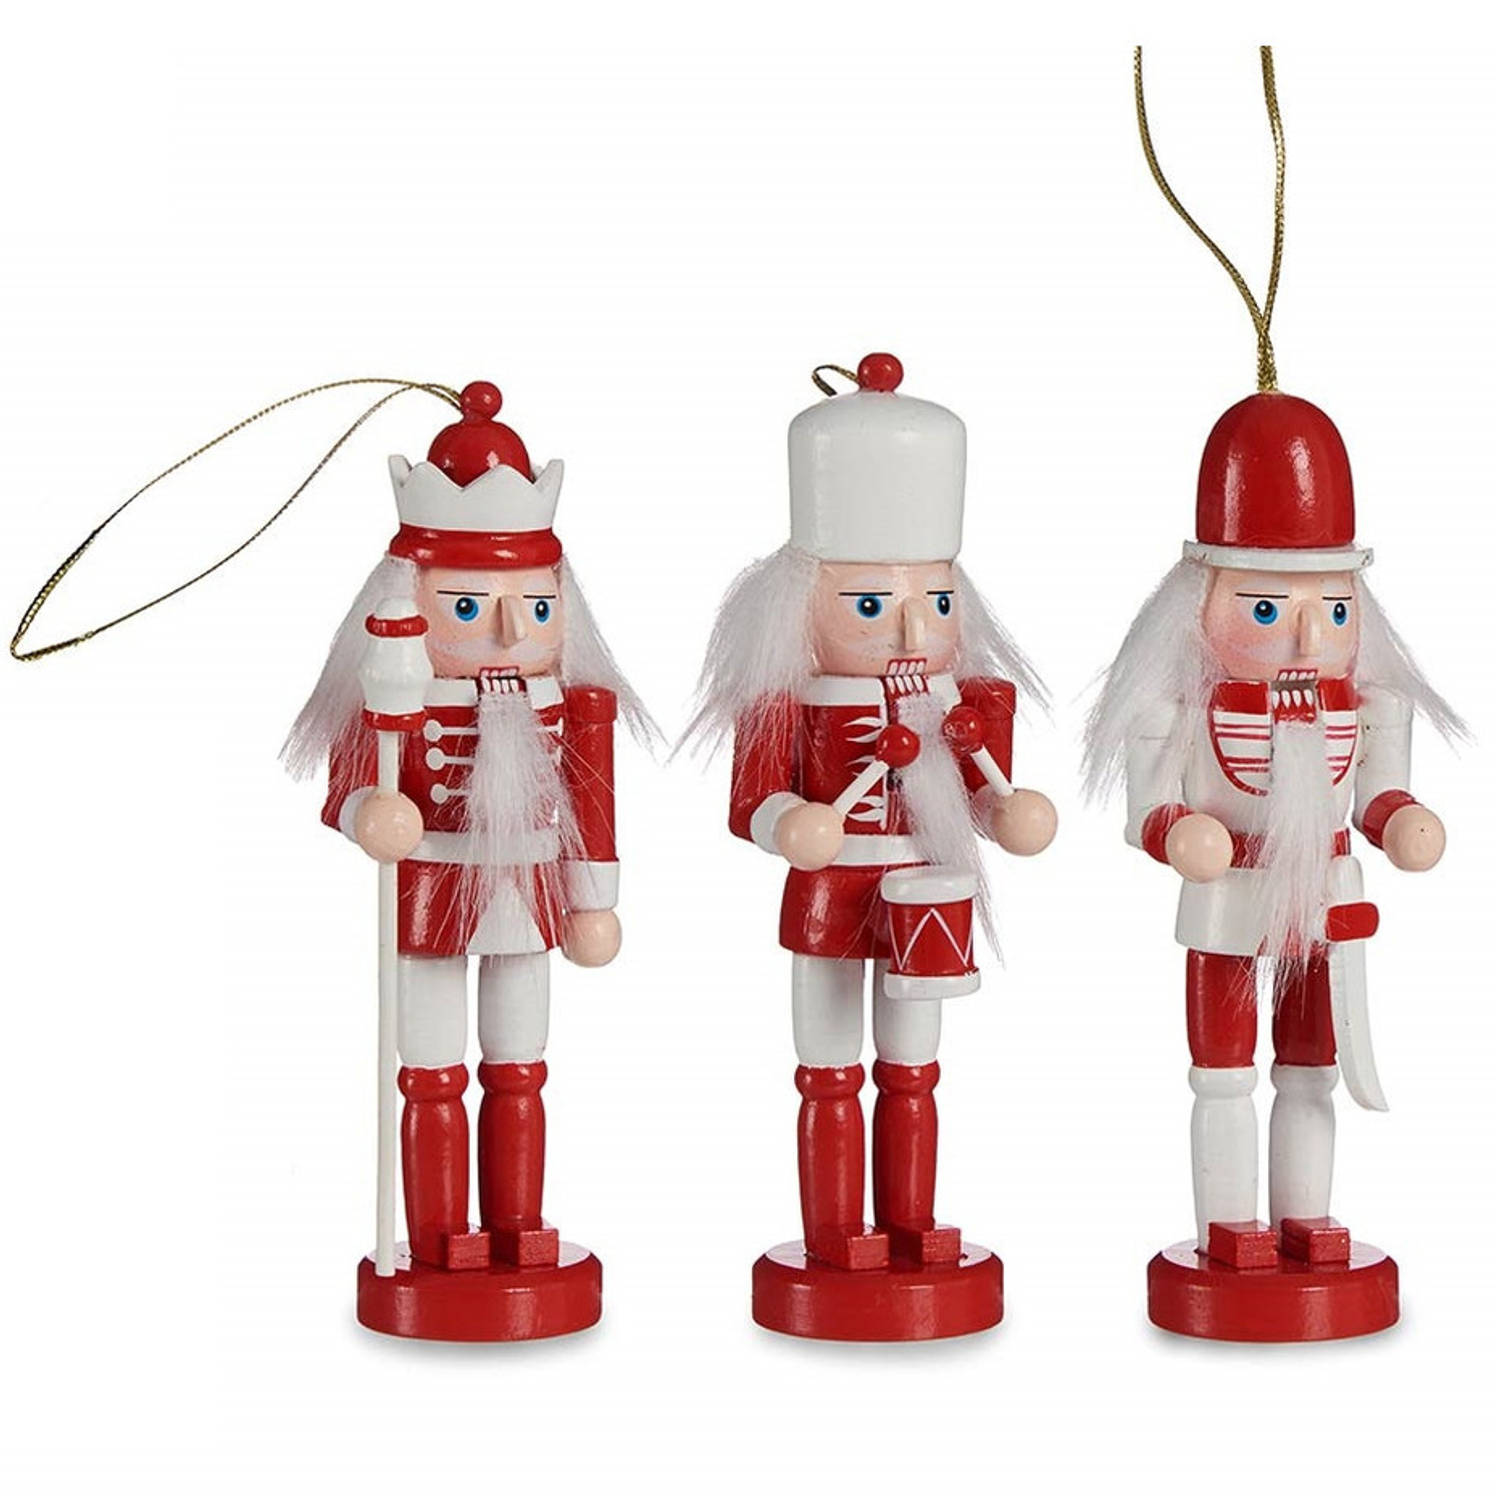 Arte R kersthangers notenkrakers/soldaten poppetjes - 3x - rood/wit 12,5 cm -hout